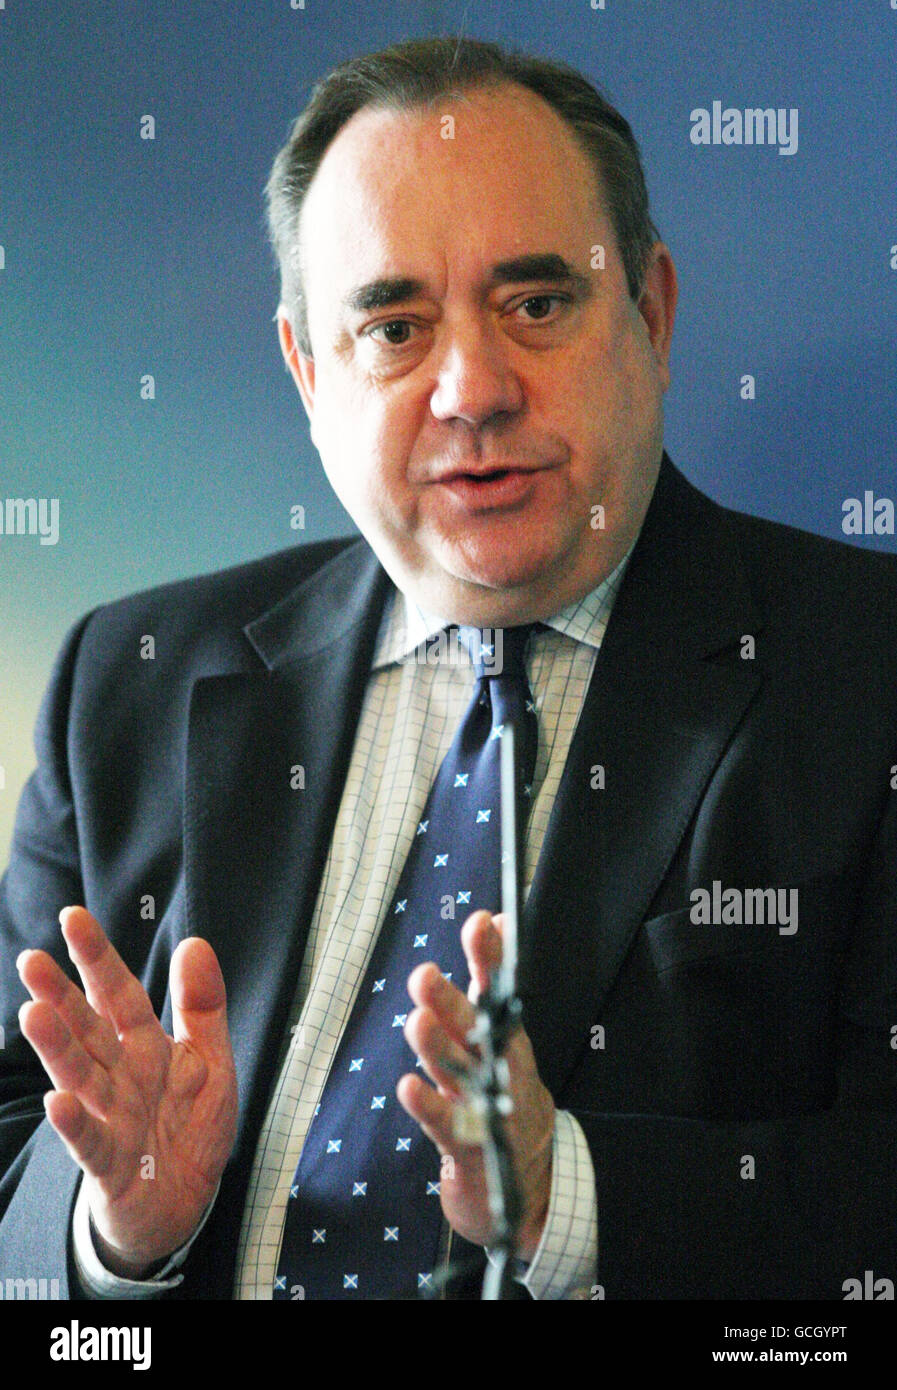 El primer ministro escocés Alex Salmond llega a una conferencia de prensa para lanzar una evaluación del Año de Homecoración de Escocia en la Casa de Bute de Edimburgo. Foto de stock